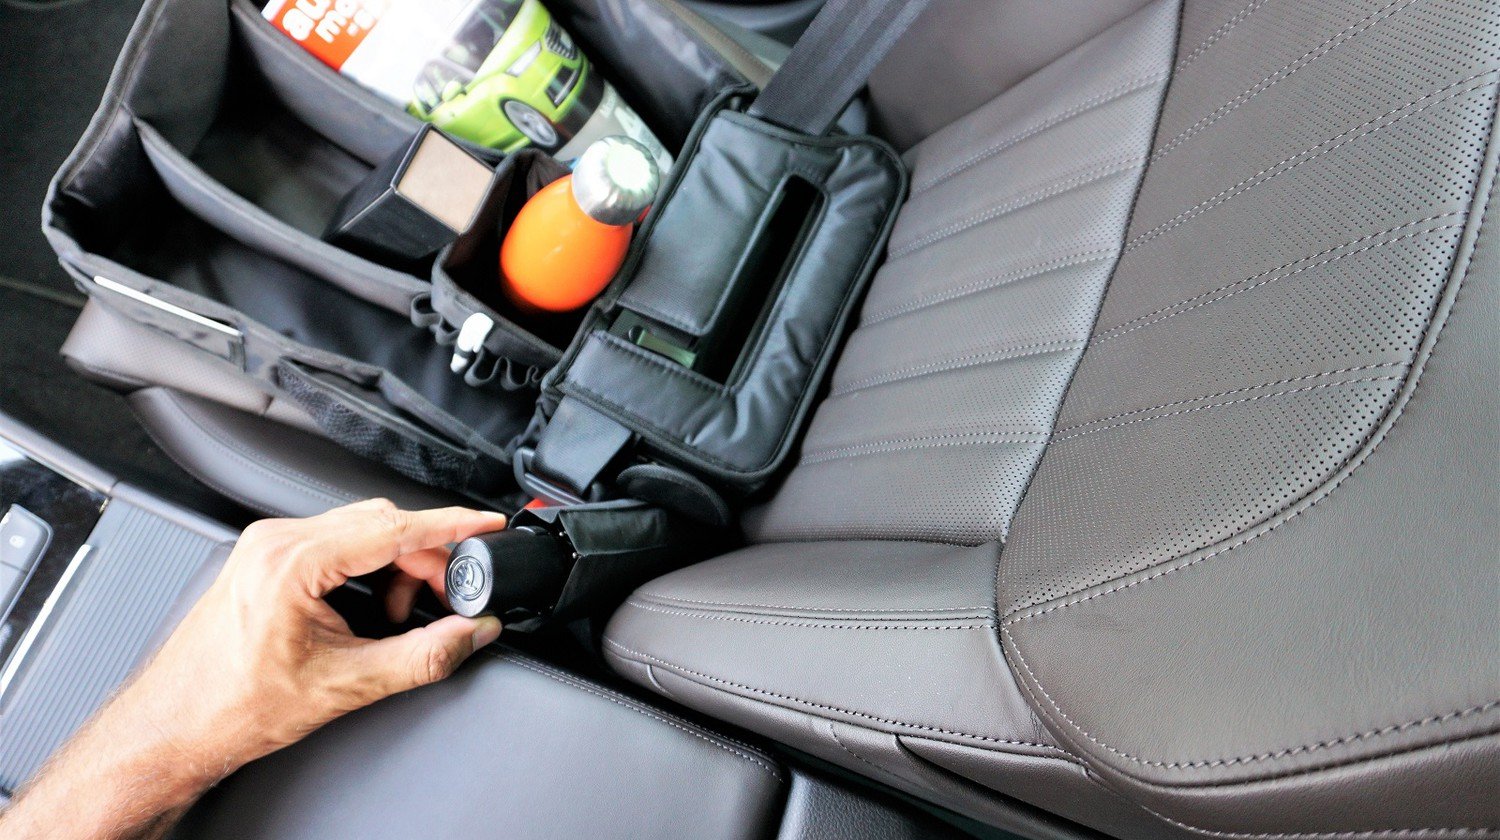 Das Slotpack im Test: Für gesicherte Ordnung auf dem Beifahrersitz